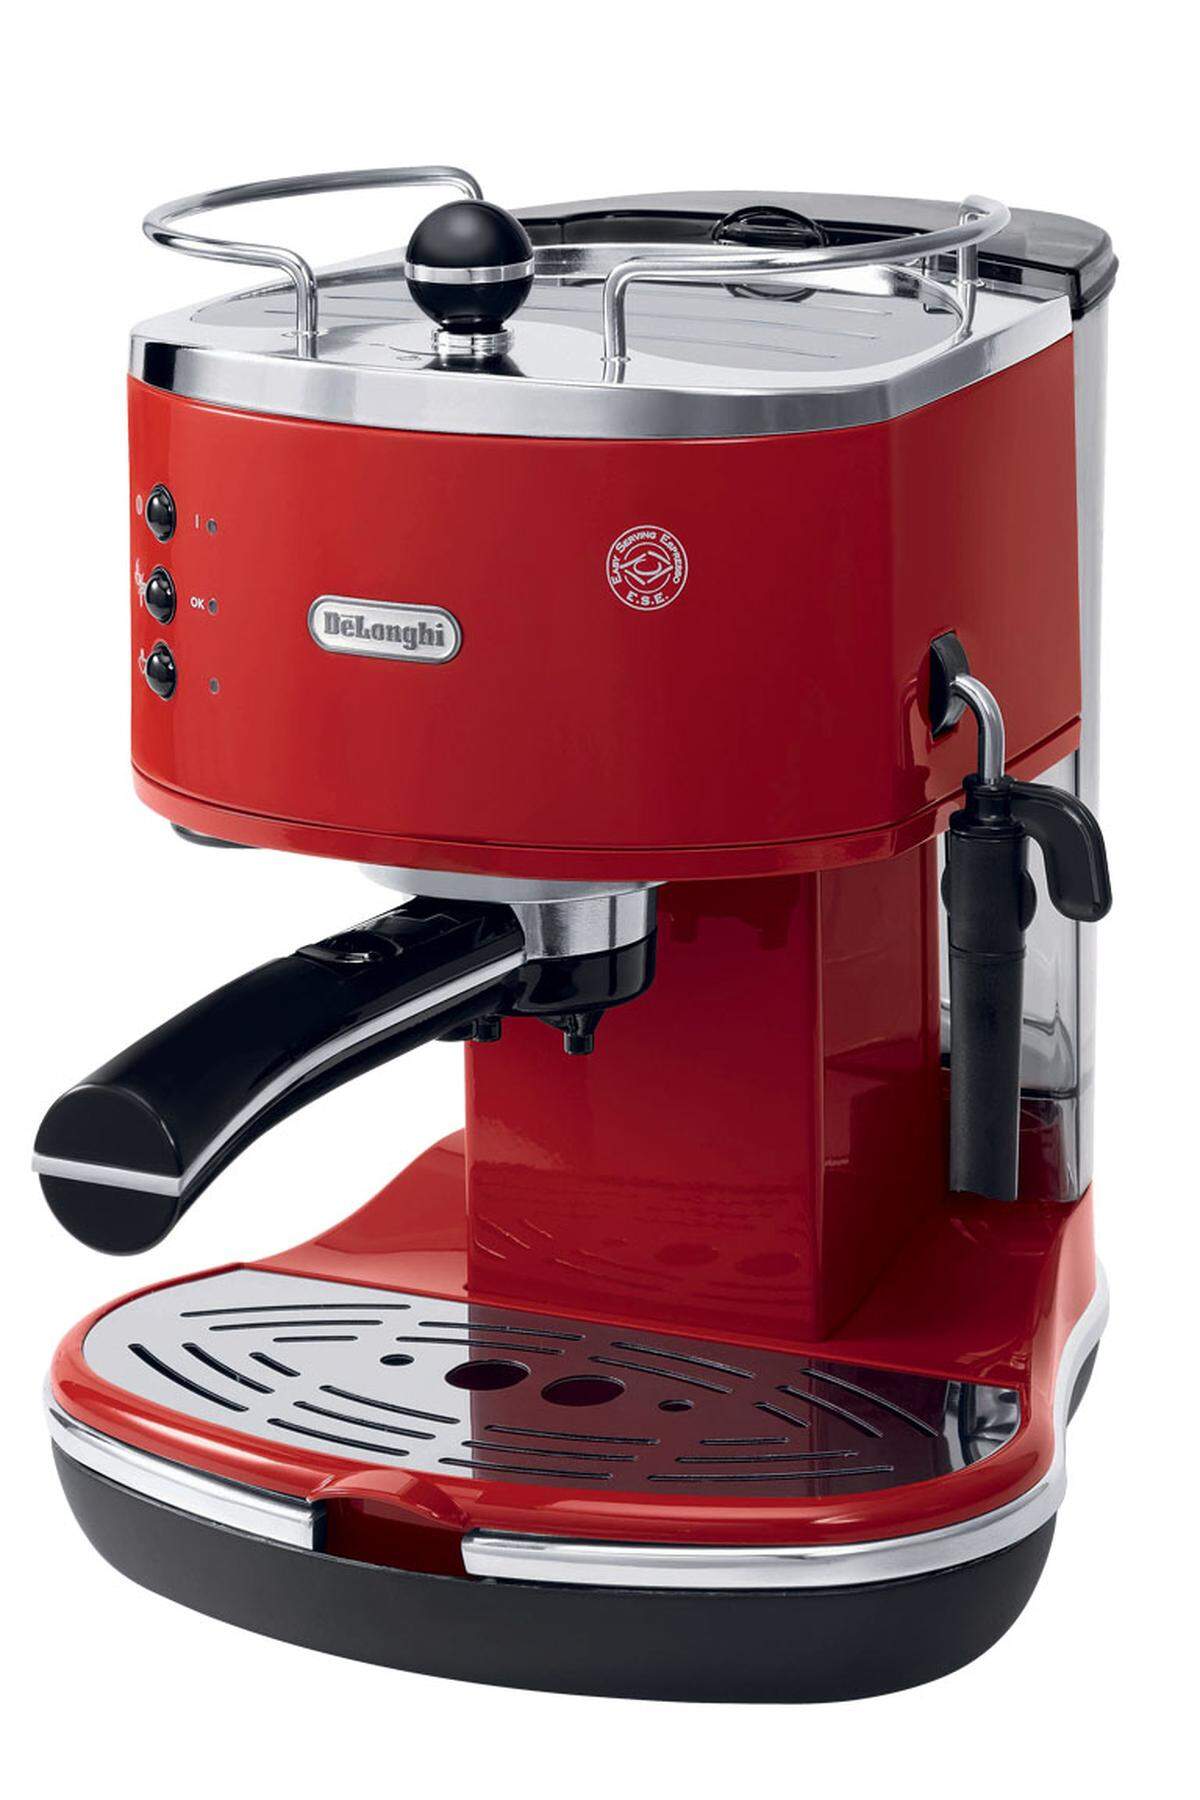 Icona Espressomaschine ECO 311.R, zu gewinnen aufschaufenster.diepresse.com/gewinnspiele